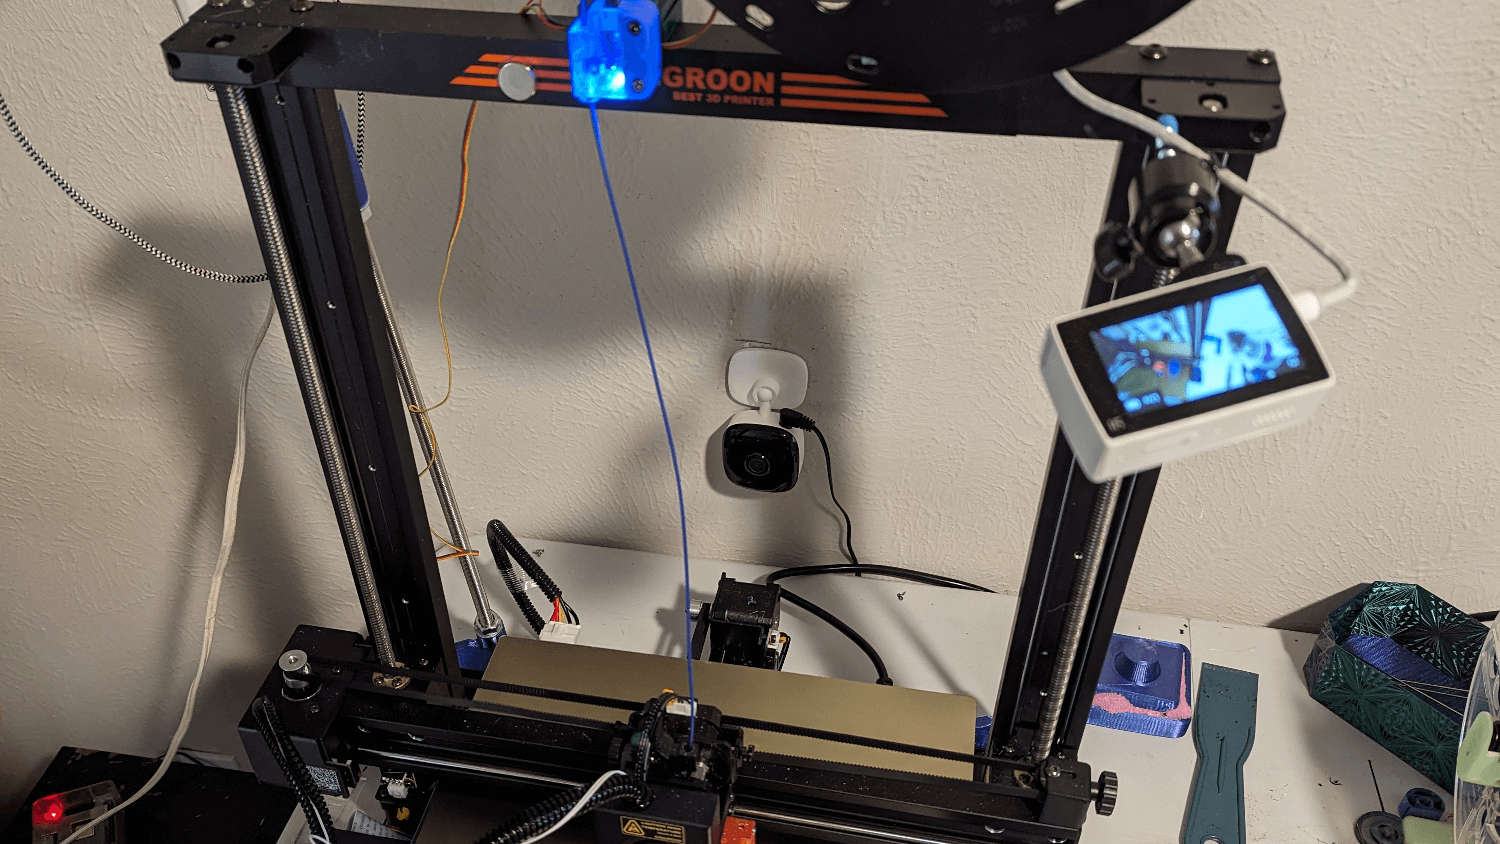 3D Printer Streaming Resolution Unlocks Webcam Options